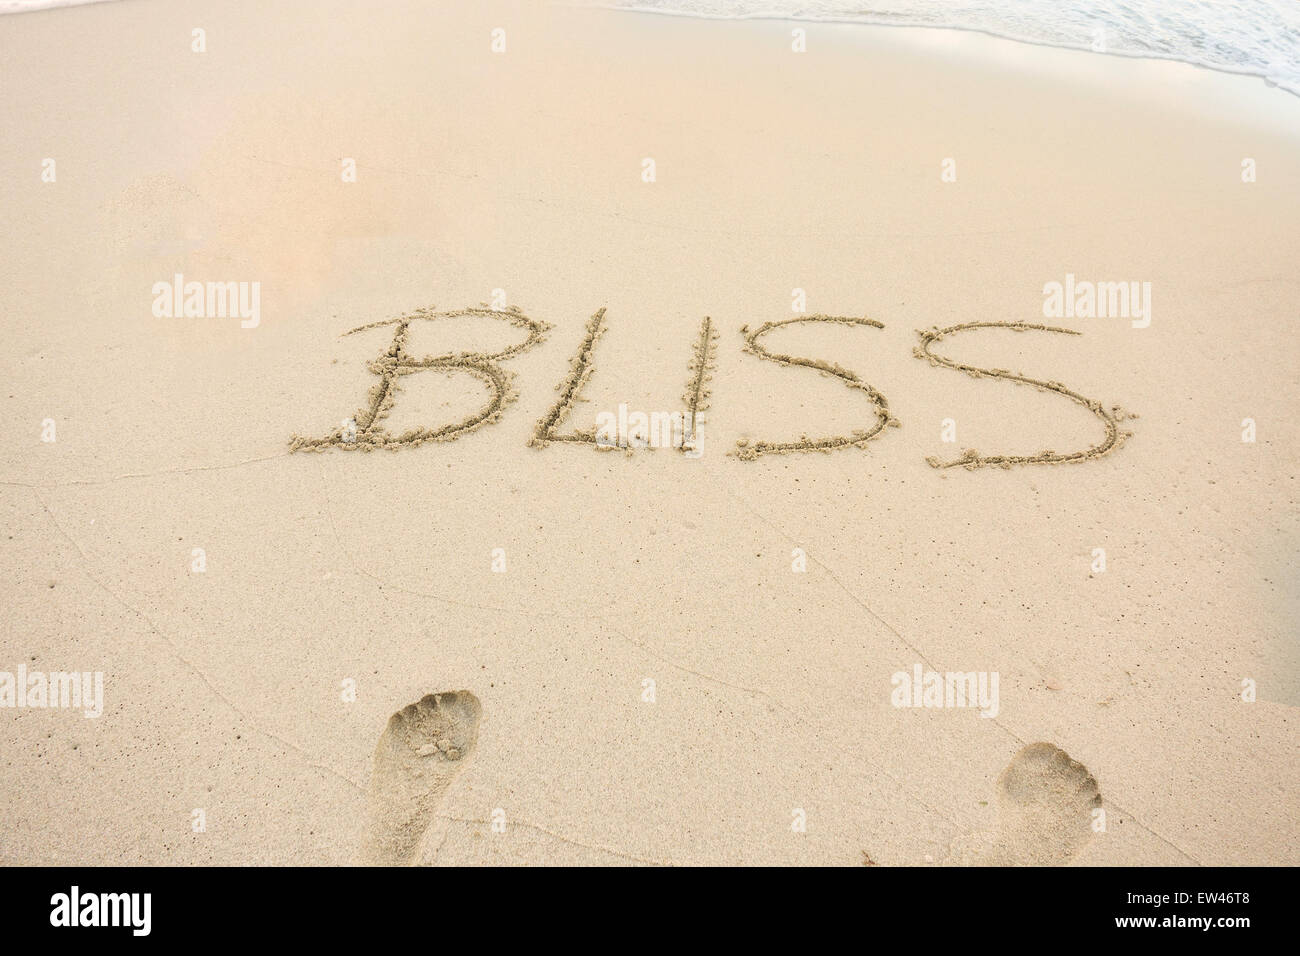 Eine Nachricht, Bliss, geschrieben in den Sand am Strand einer tropischen Insel. Konzeptionelle. Stockfoto